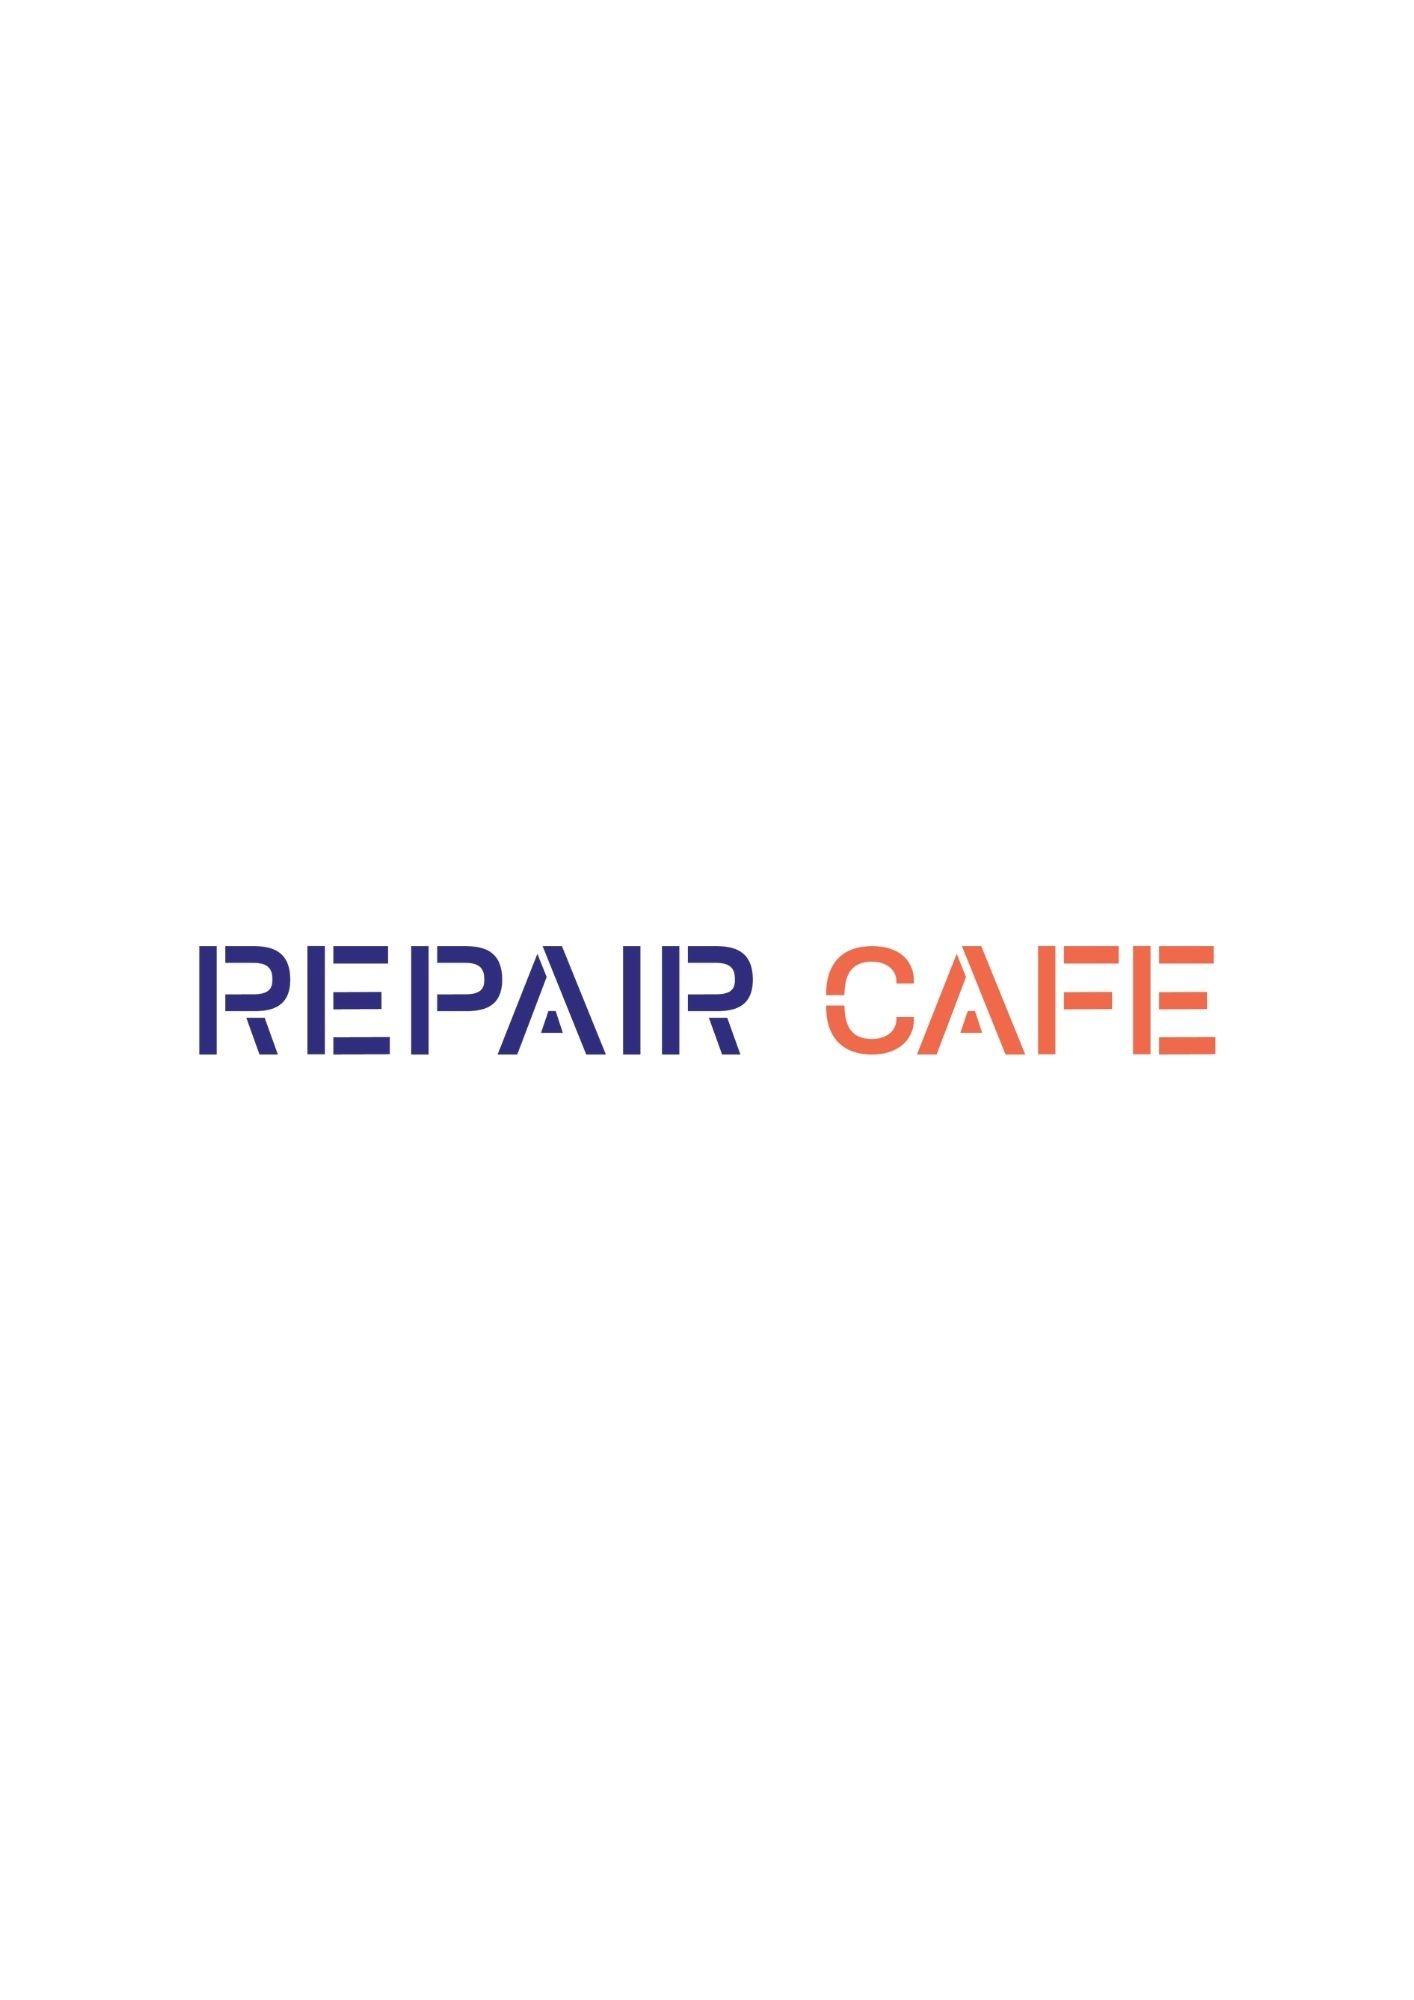 Lire la suite à propos de l’article “Repair café” – Samedi 15 janvier 2022